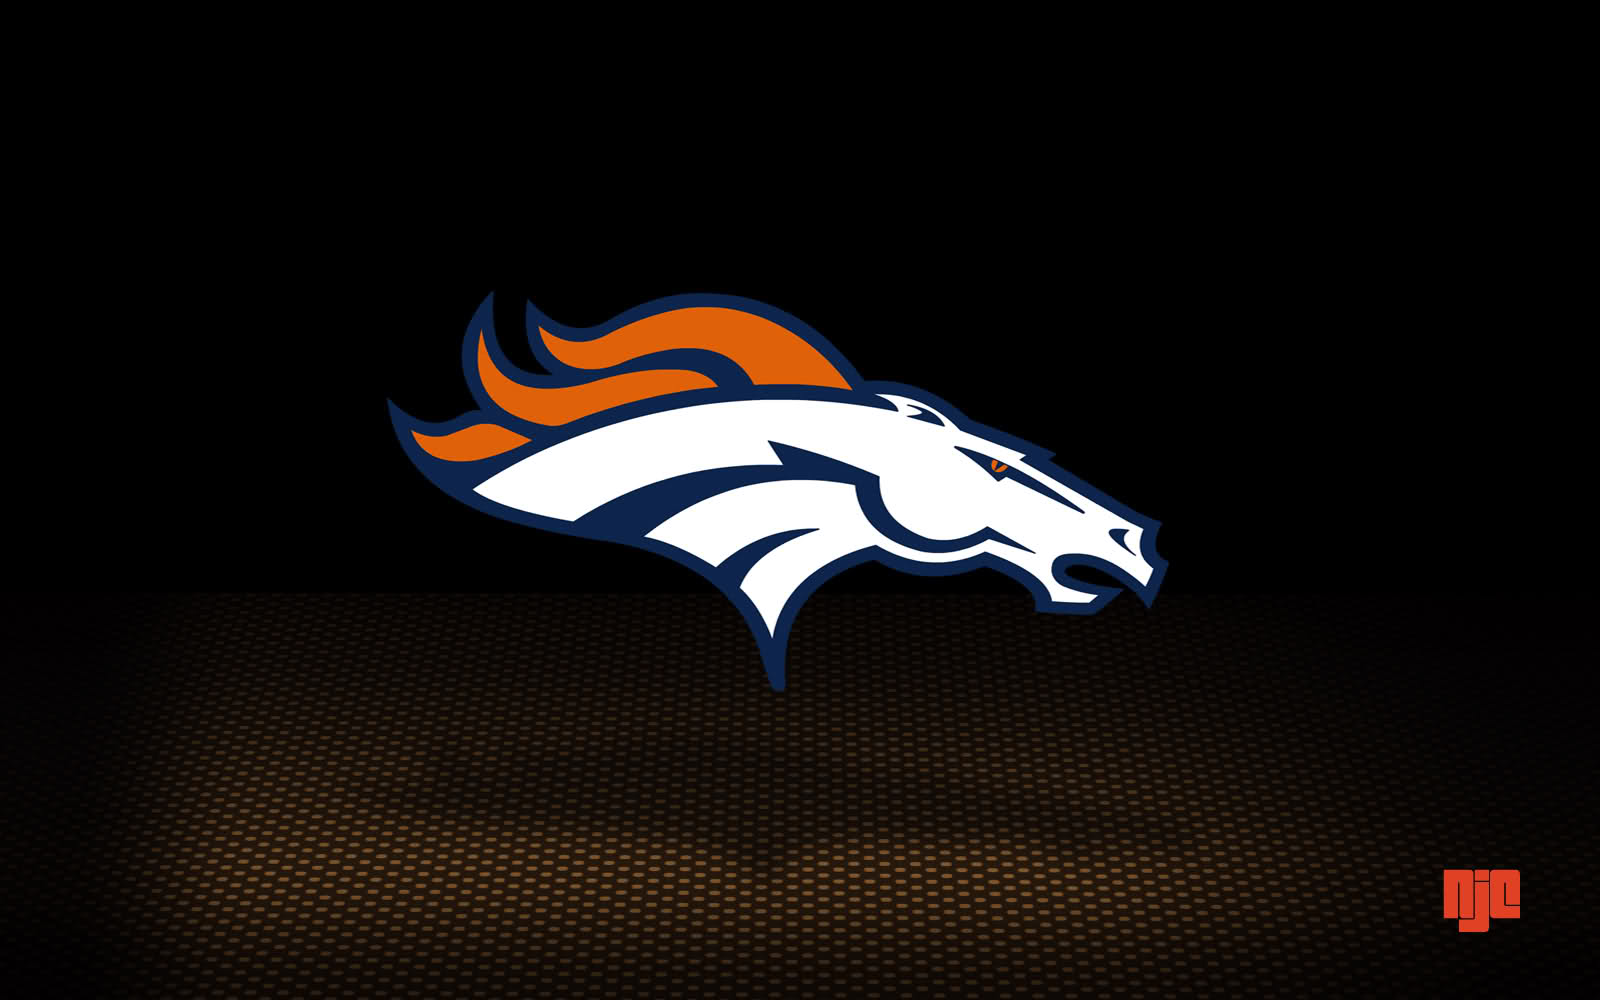 Fondos de pantalla de Denver Broncos Wallpapers de Denver Broncos